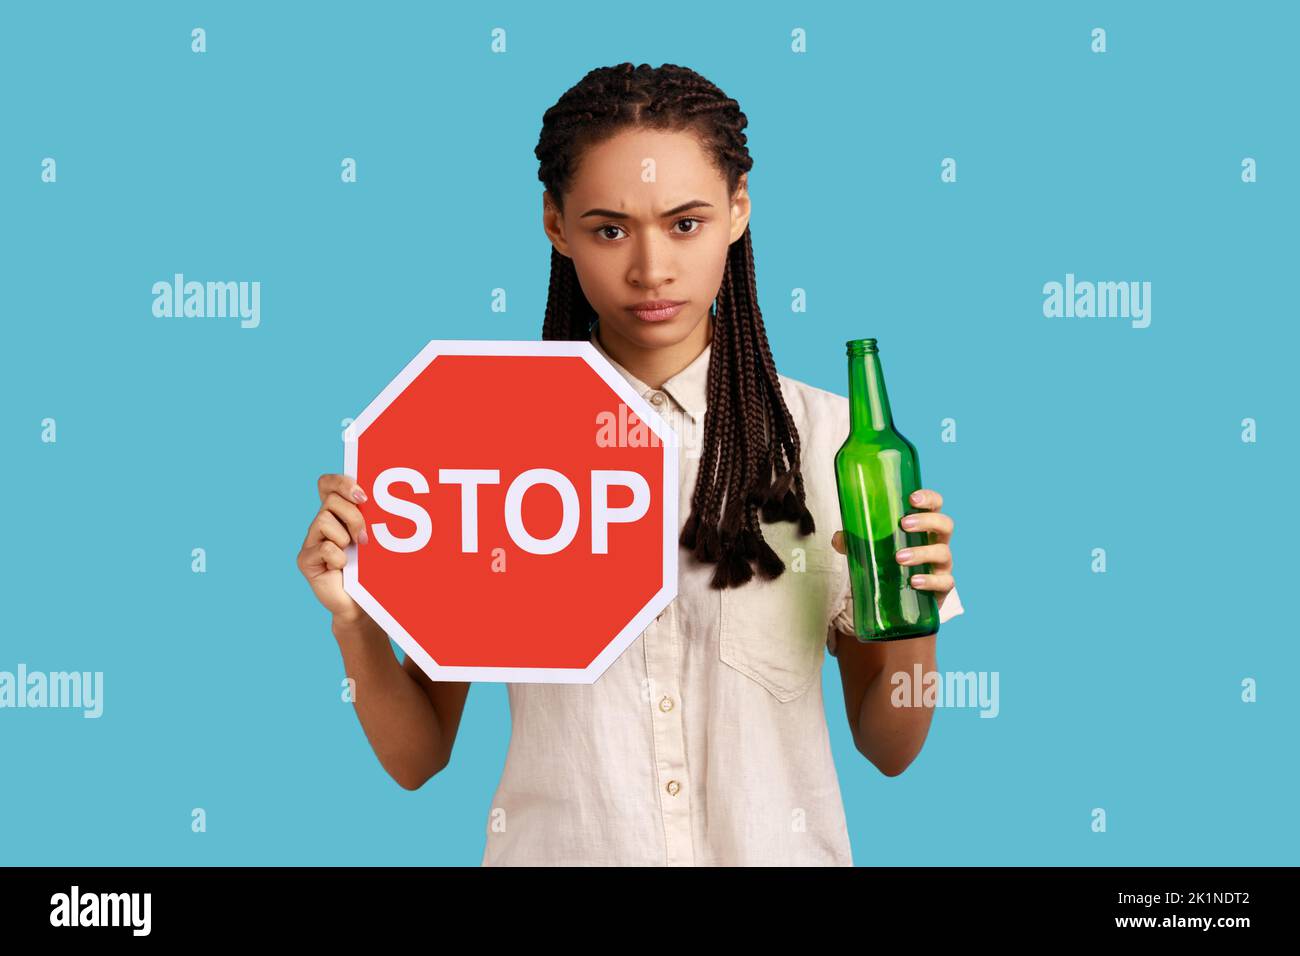 Porträt einer ernsthaften Frau mit Dreadlocks mit rotem Stoppschild und Flasche mit alkoholischem Getränk, Anrufe auf nicht trinken Alkohol, trägt weißes Hemd. Innenaufnahme des Studios isoliert auf blauem Hintergrund. Stockfoto